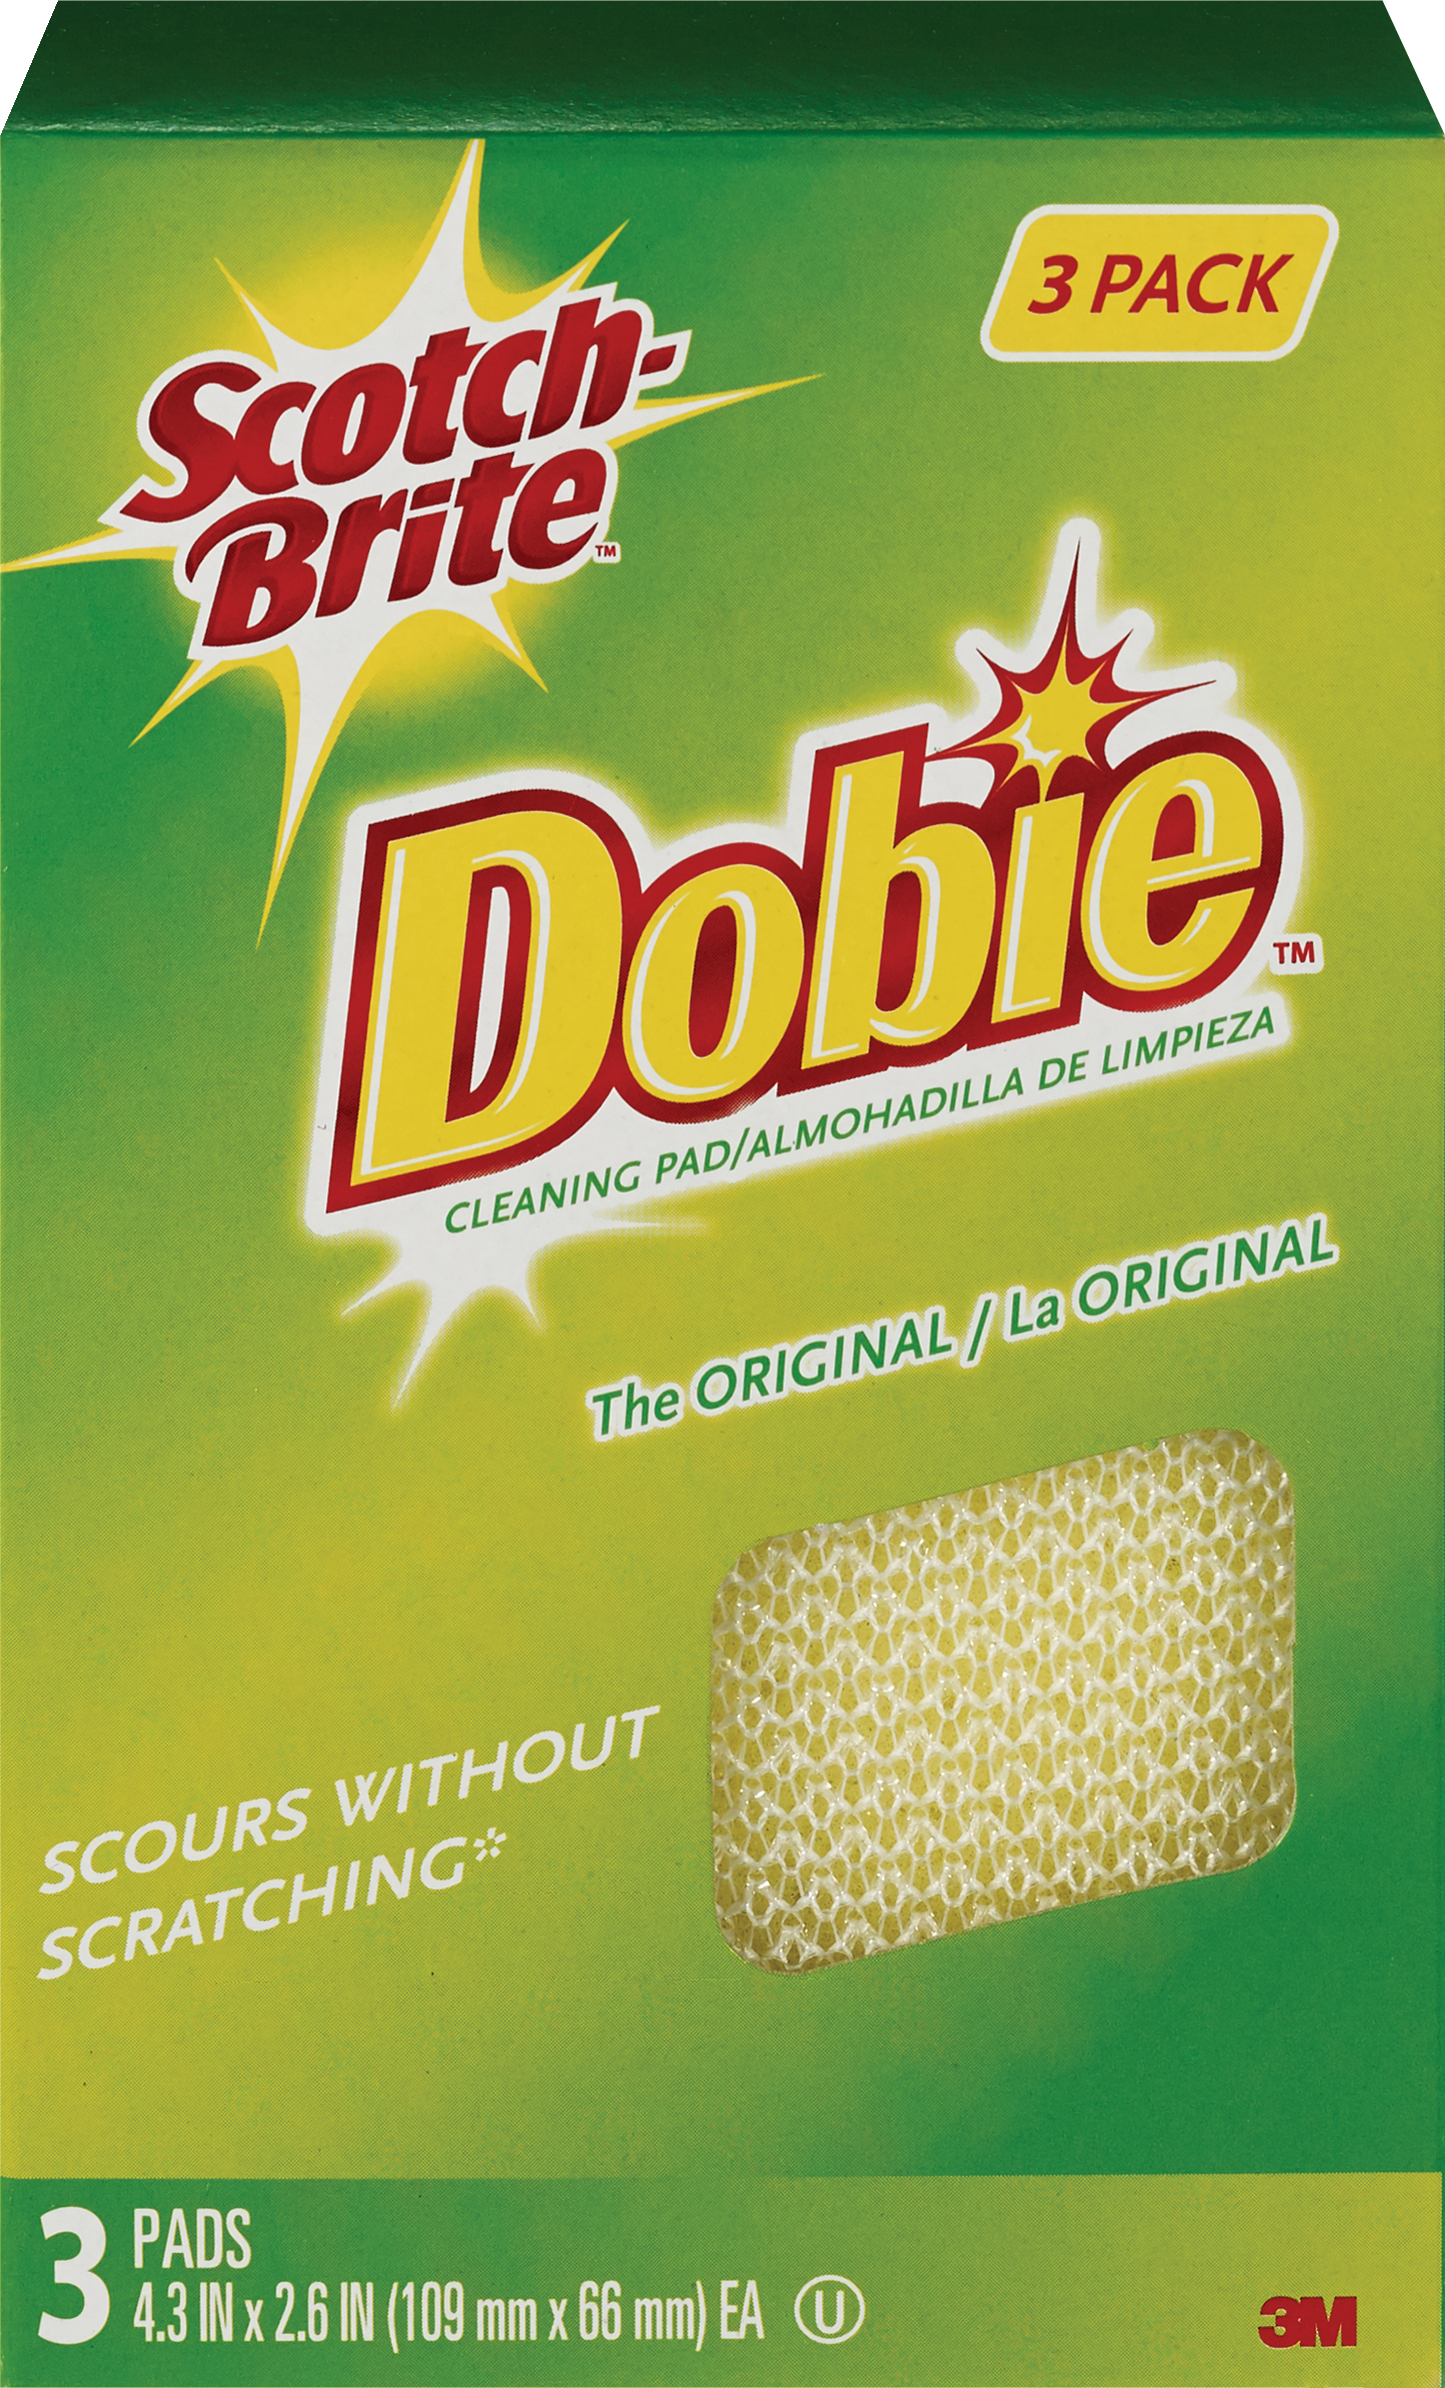 Scotch-Brite Dobie Cleaning Pad, 3 Pack